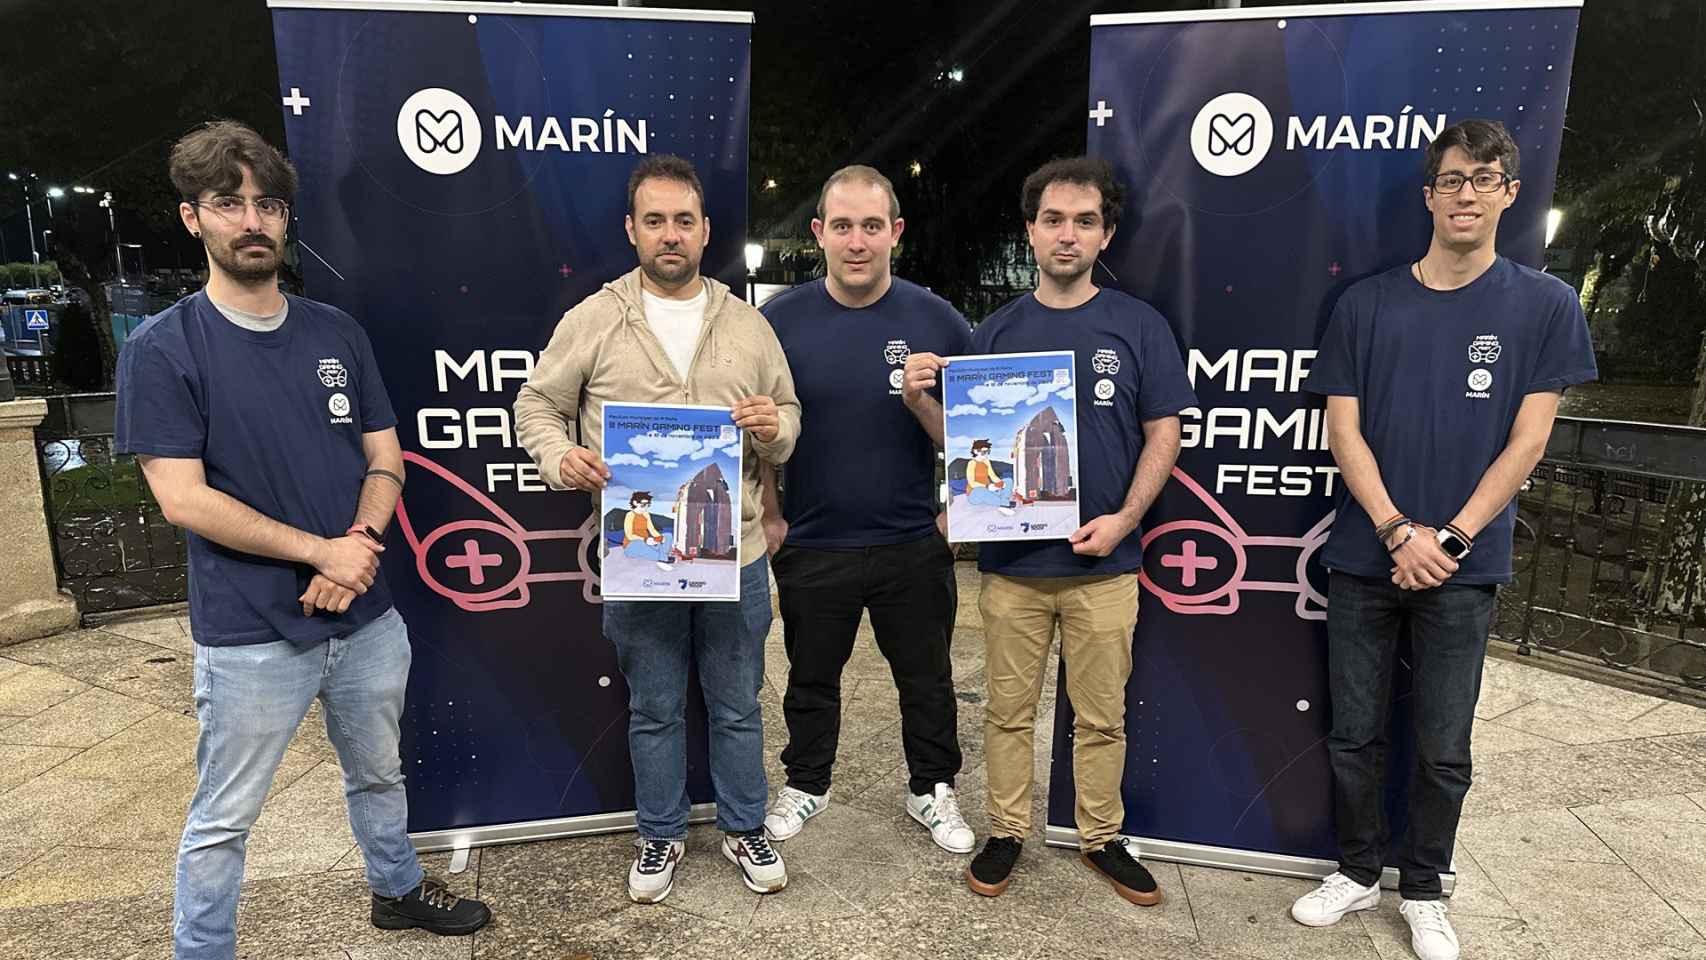 Presentación del Marín Gaming Fest.